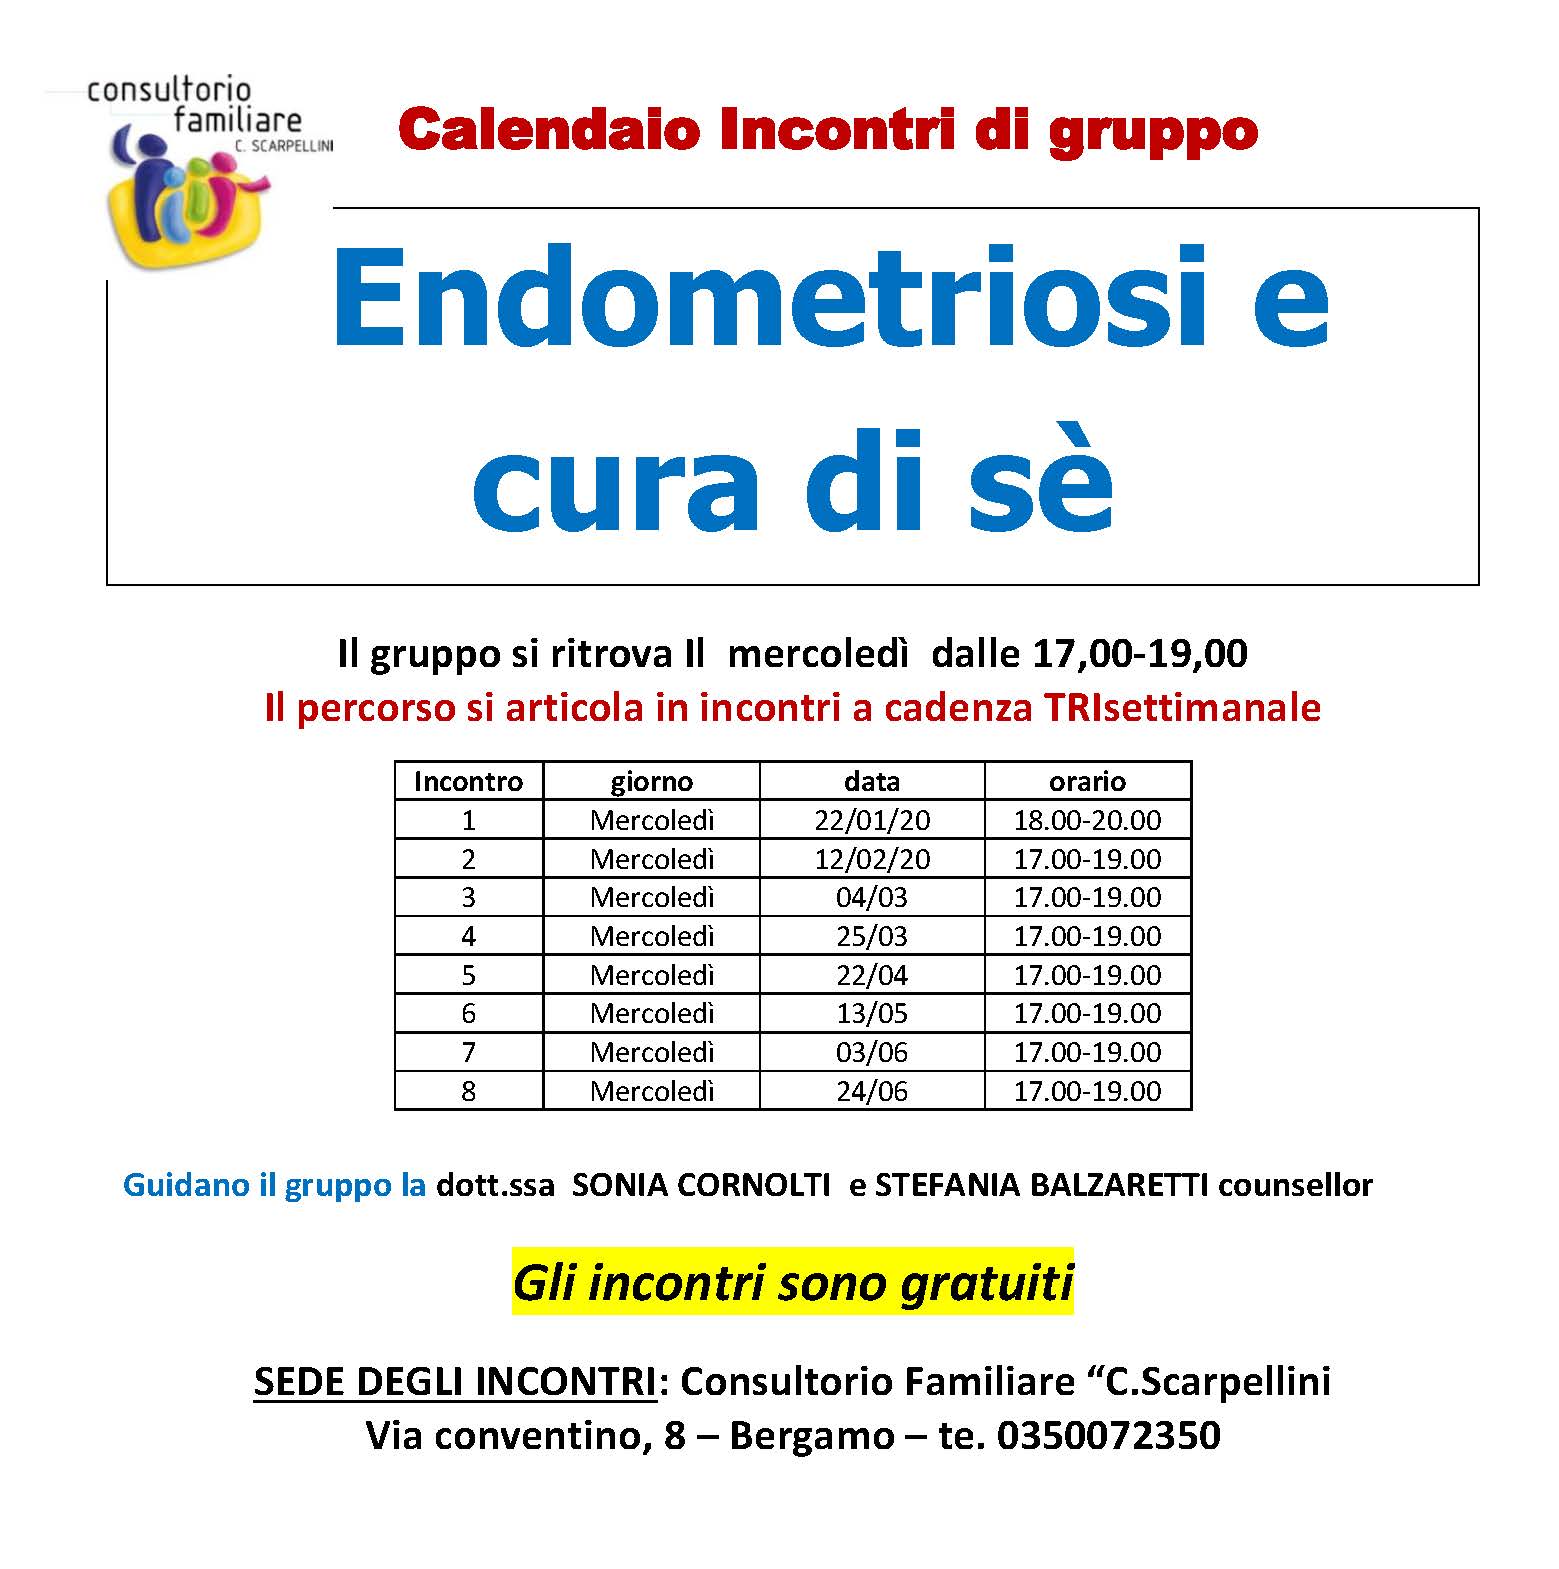 Endometriosi caledario2020 Scarpellini